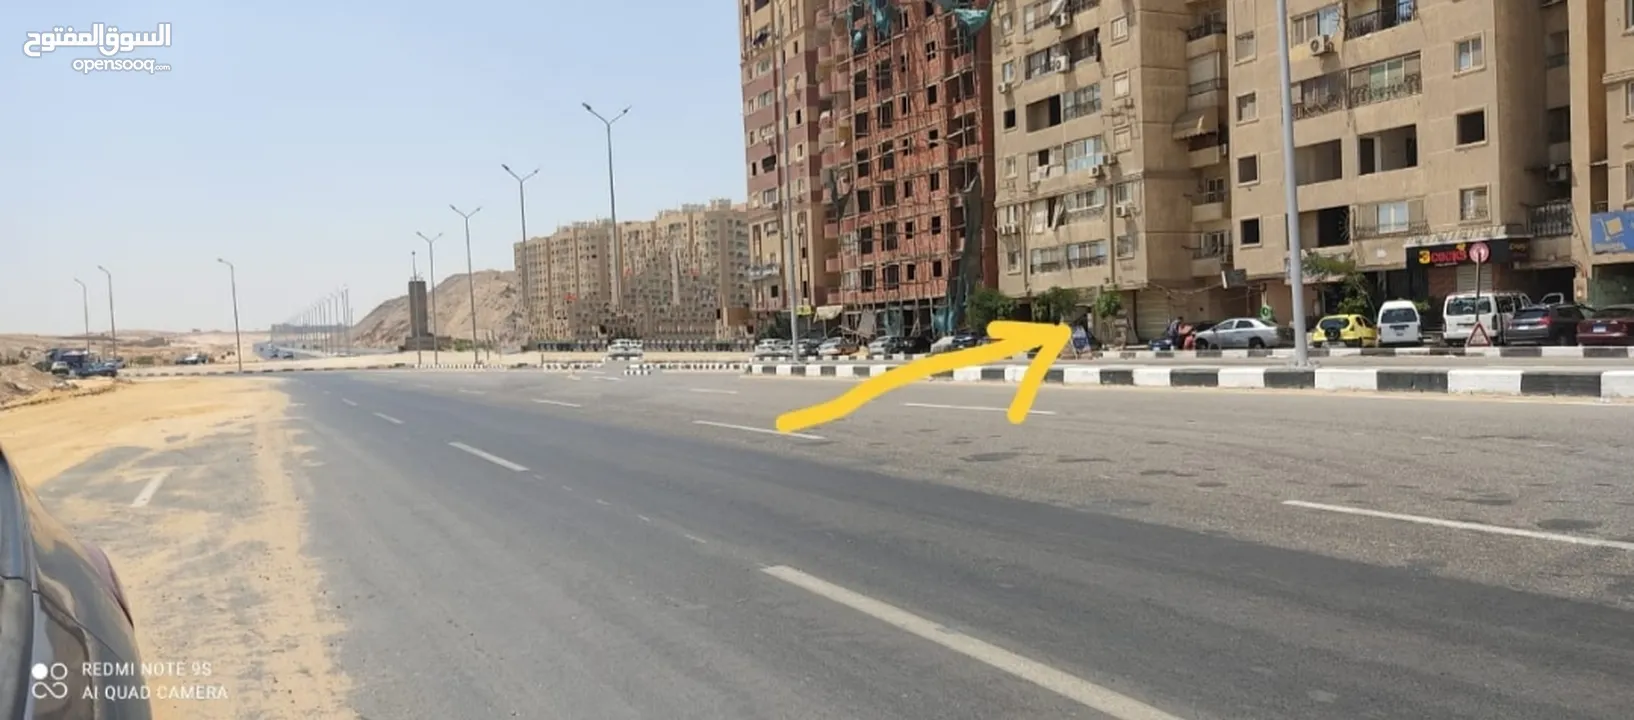 محل مرخص 36 متر على محور المشير محمد علي فهمي مباشرة على بعد خطوات من ميدان الواحه